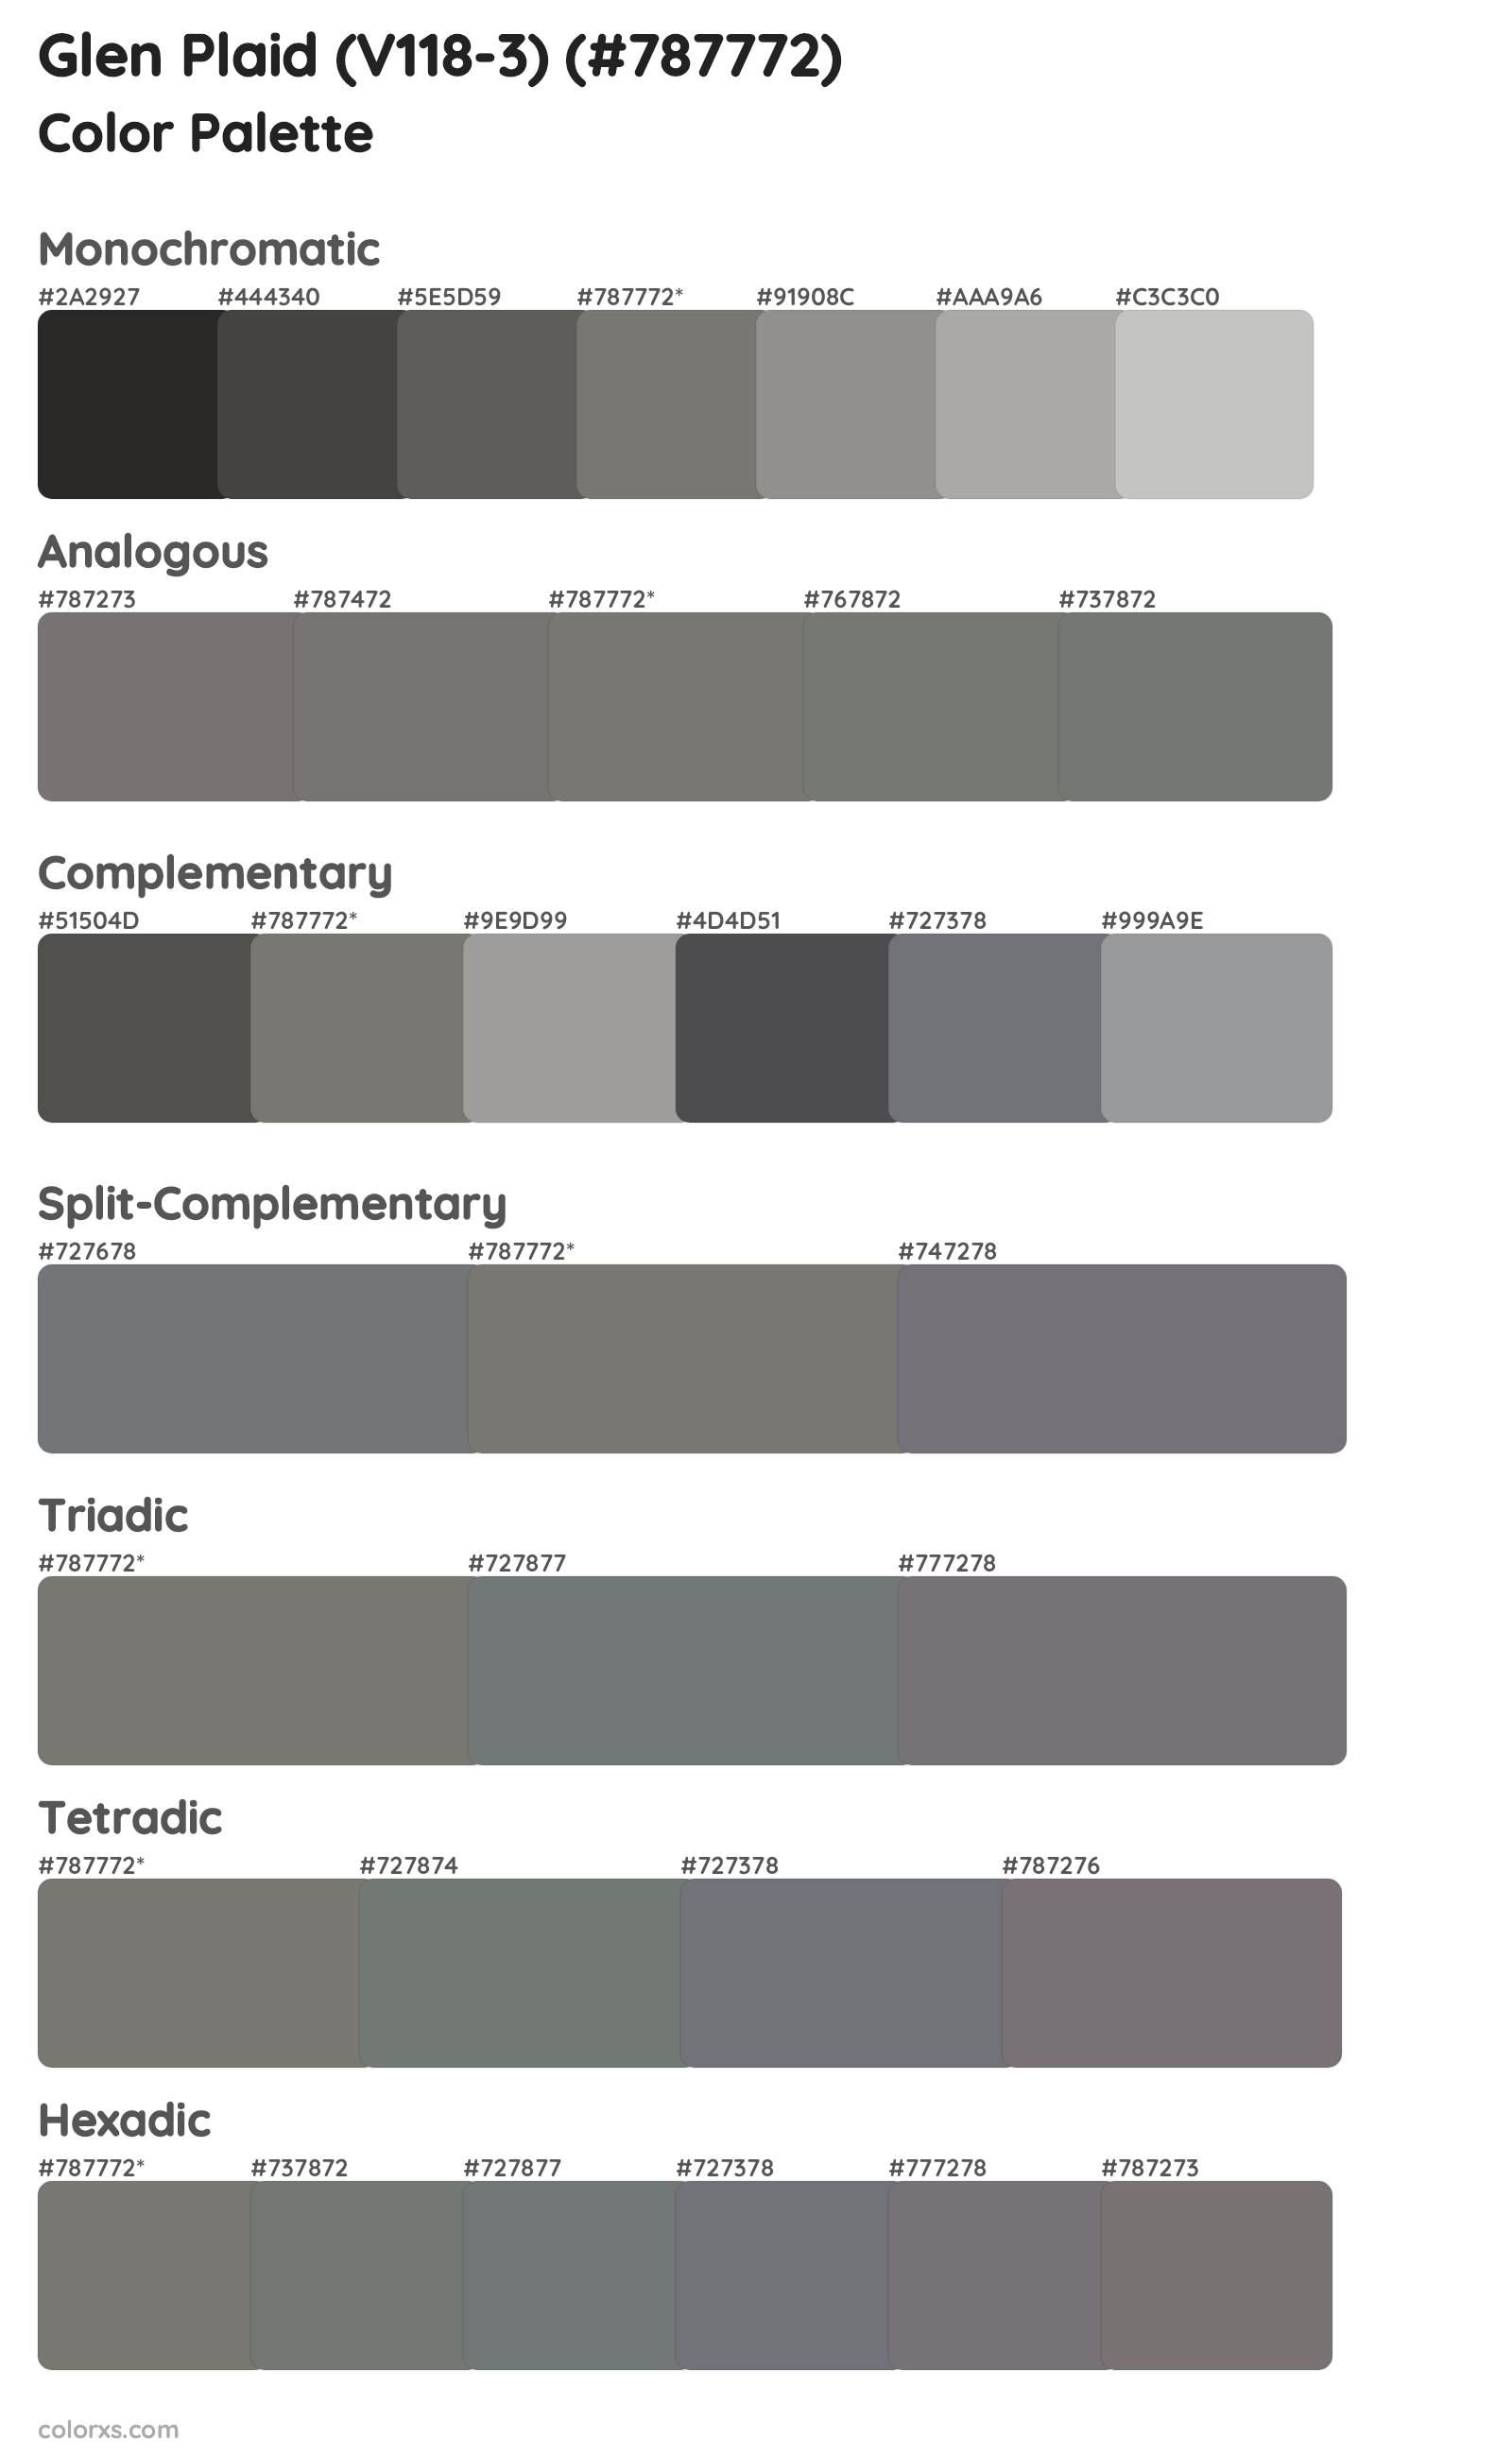 Glen Plaid (V118-3) Color Scheme Palettes